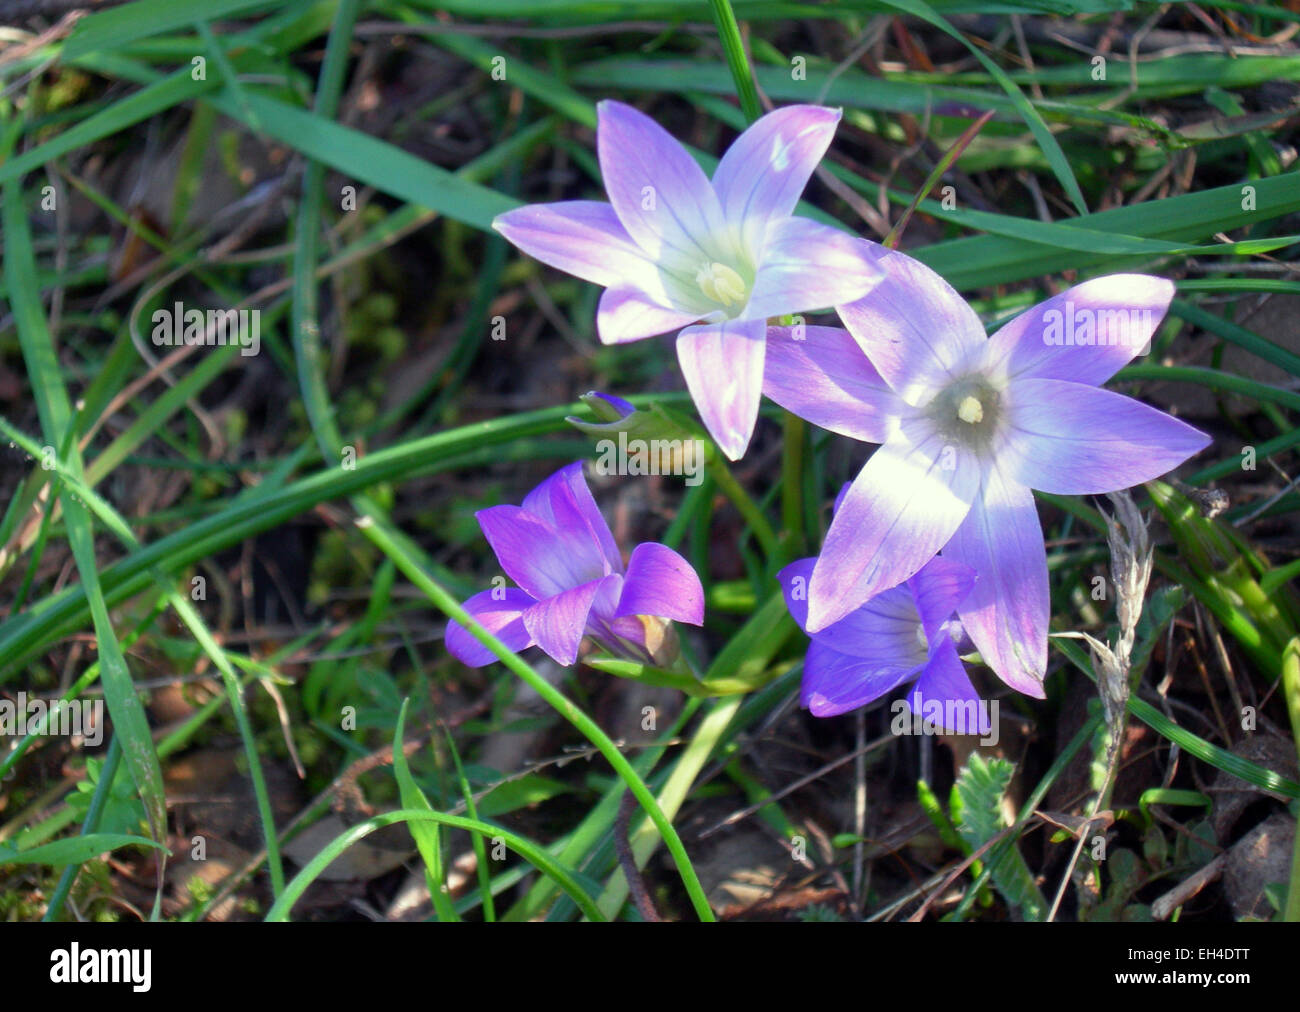 drei Blumen des Veilchens in dem grünen Rasen in Licht und Schatten Stockfoto